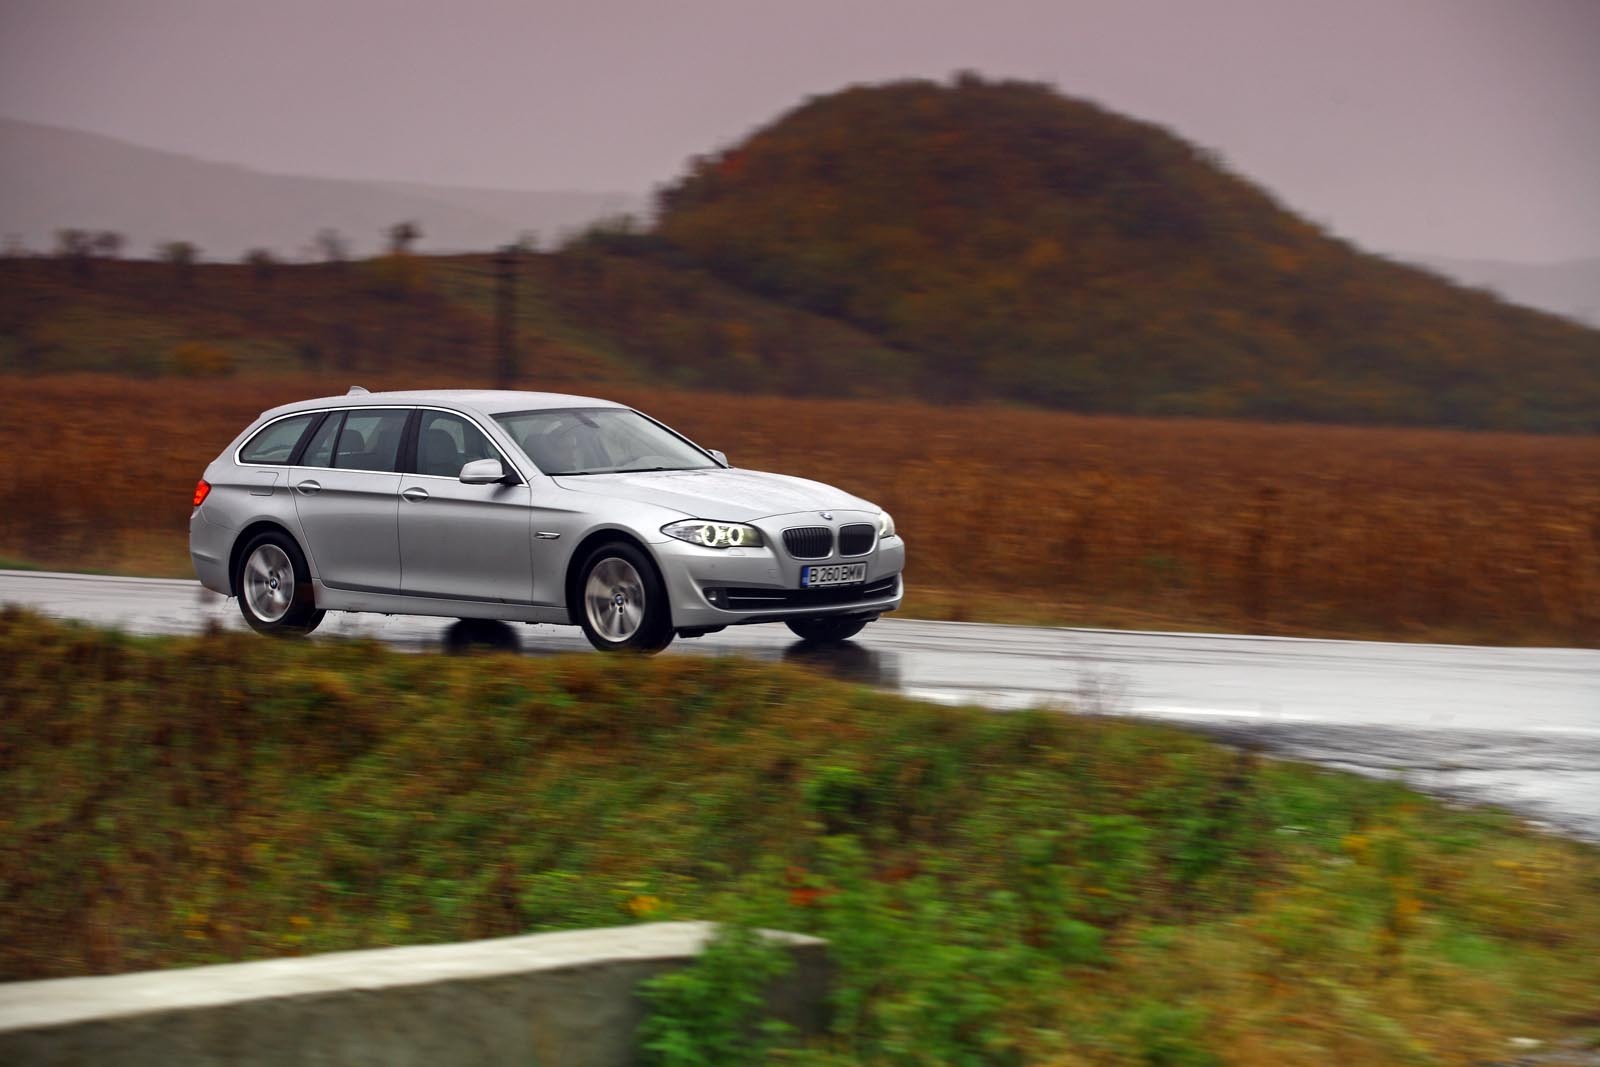 BMW 530d Touring este gandit pentru autostrazi, dar se descurca excelent pe viraje